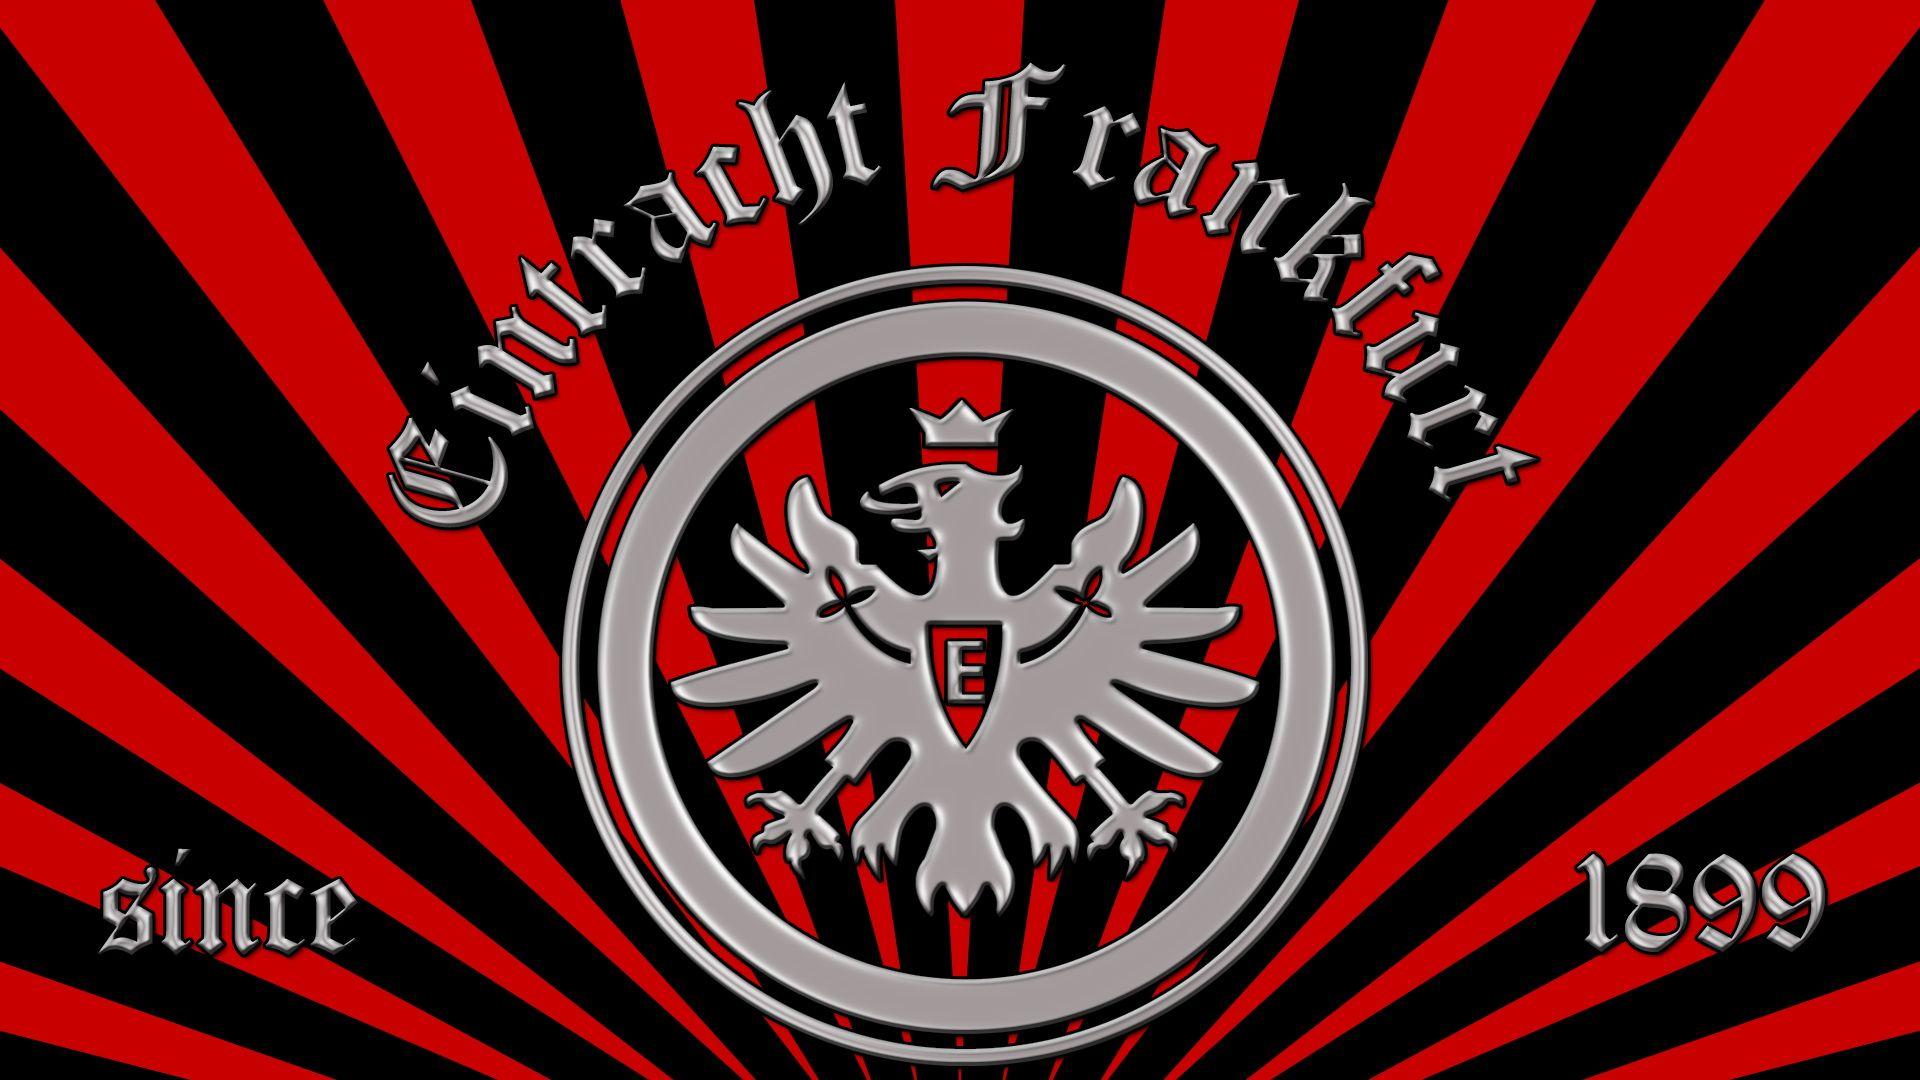 Eintracht F. since 1899. BL